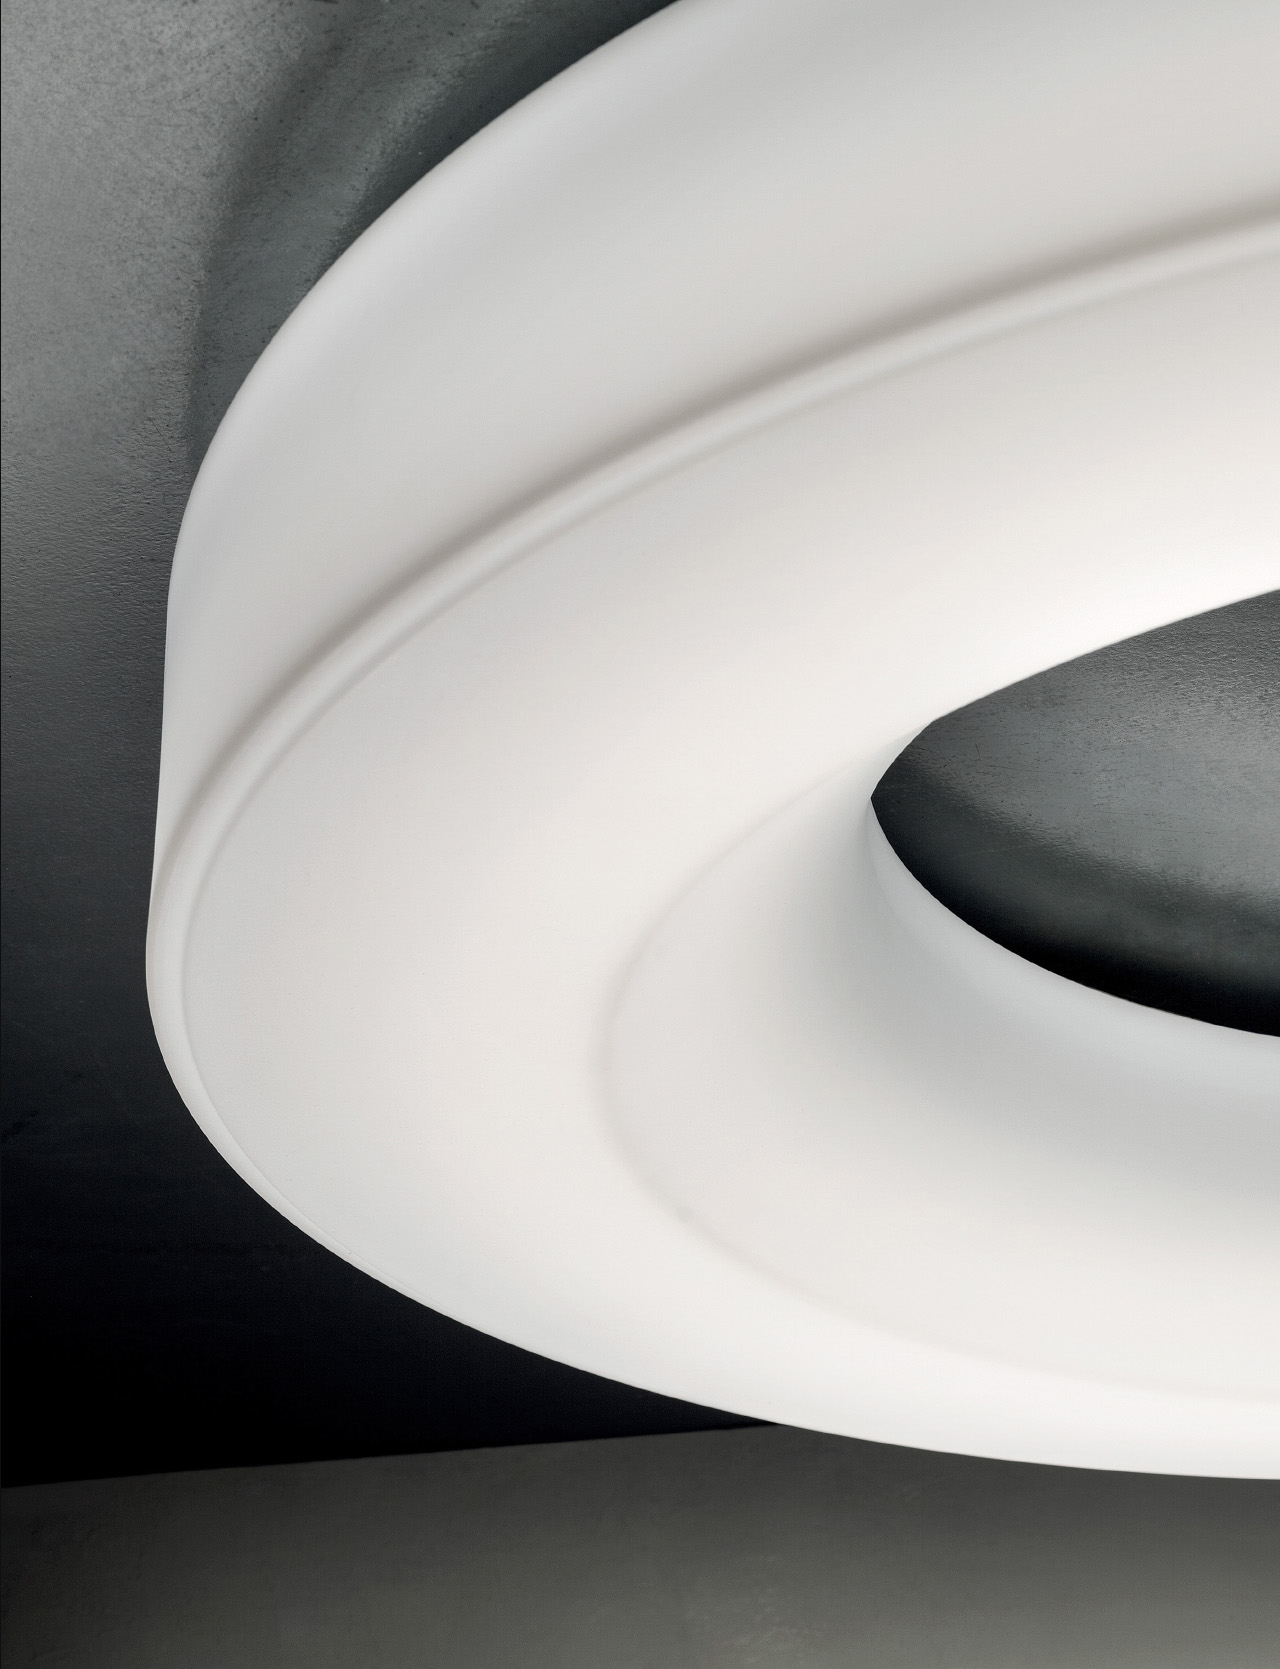 Saturn-Lampe für Wand/Decke